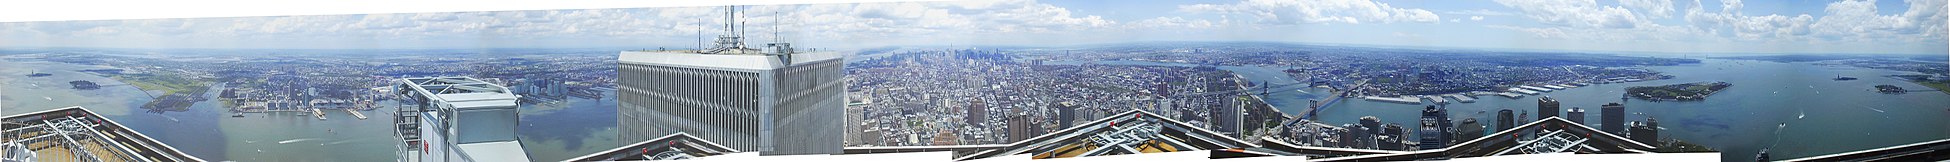 Panorama à 360° de New York du toit du WTC 2 en août 2001 (3 semaines avant les attentats).